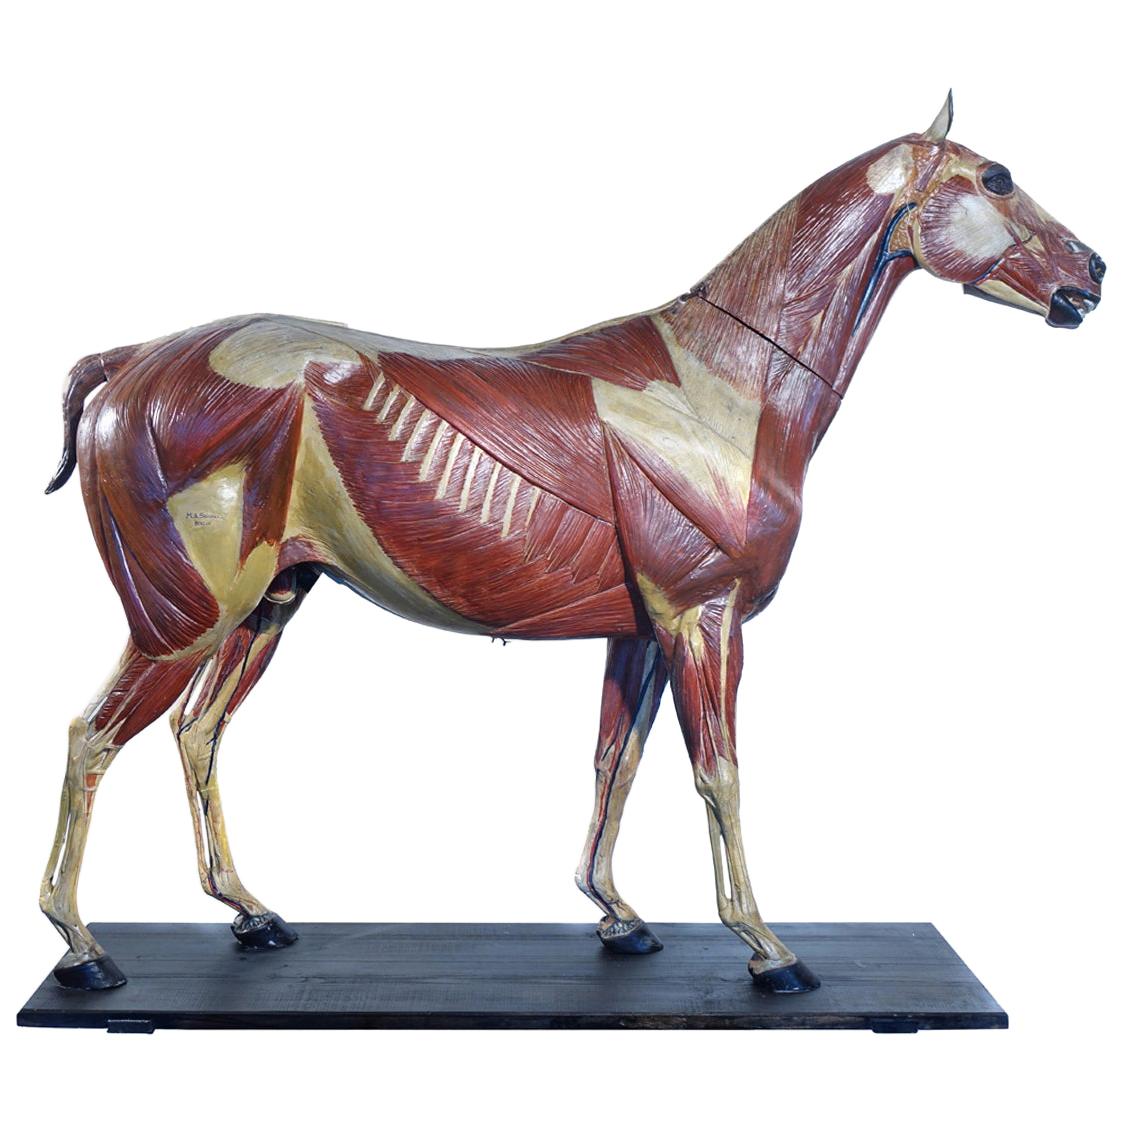 Seltenes deutsches Anatomisches Pferdmodell aus den 1800er Jahren, signiert A.M.Sommer